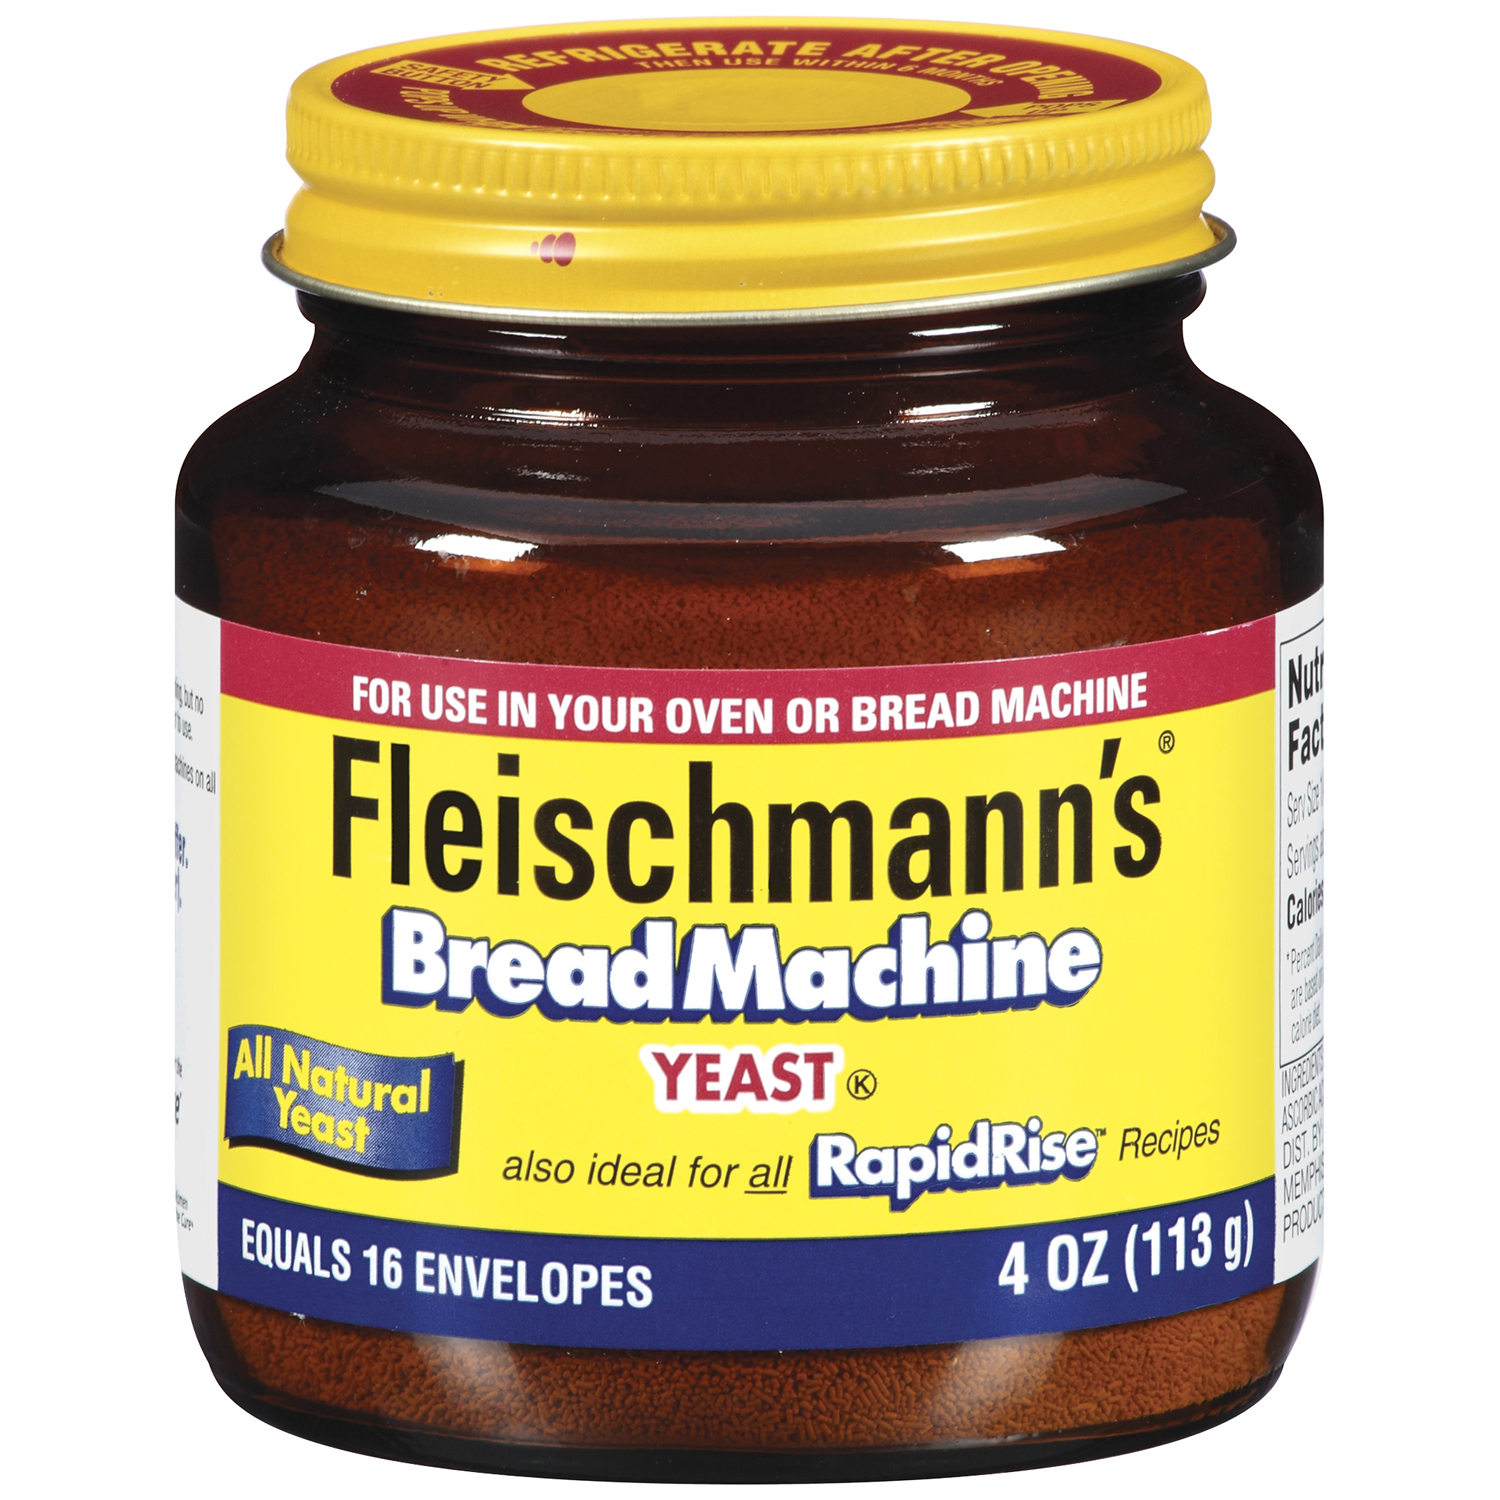 Fleischmann's Bread Machine Yeast, 4 oz (113 g)